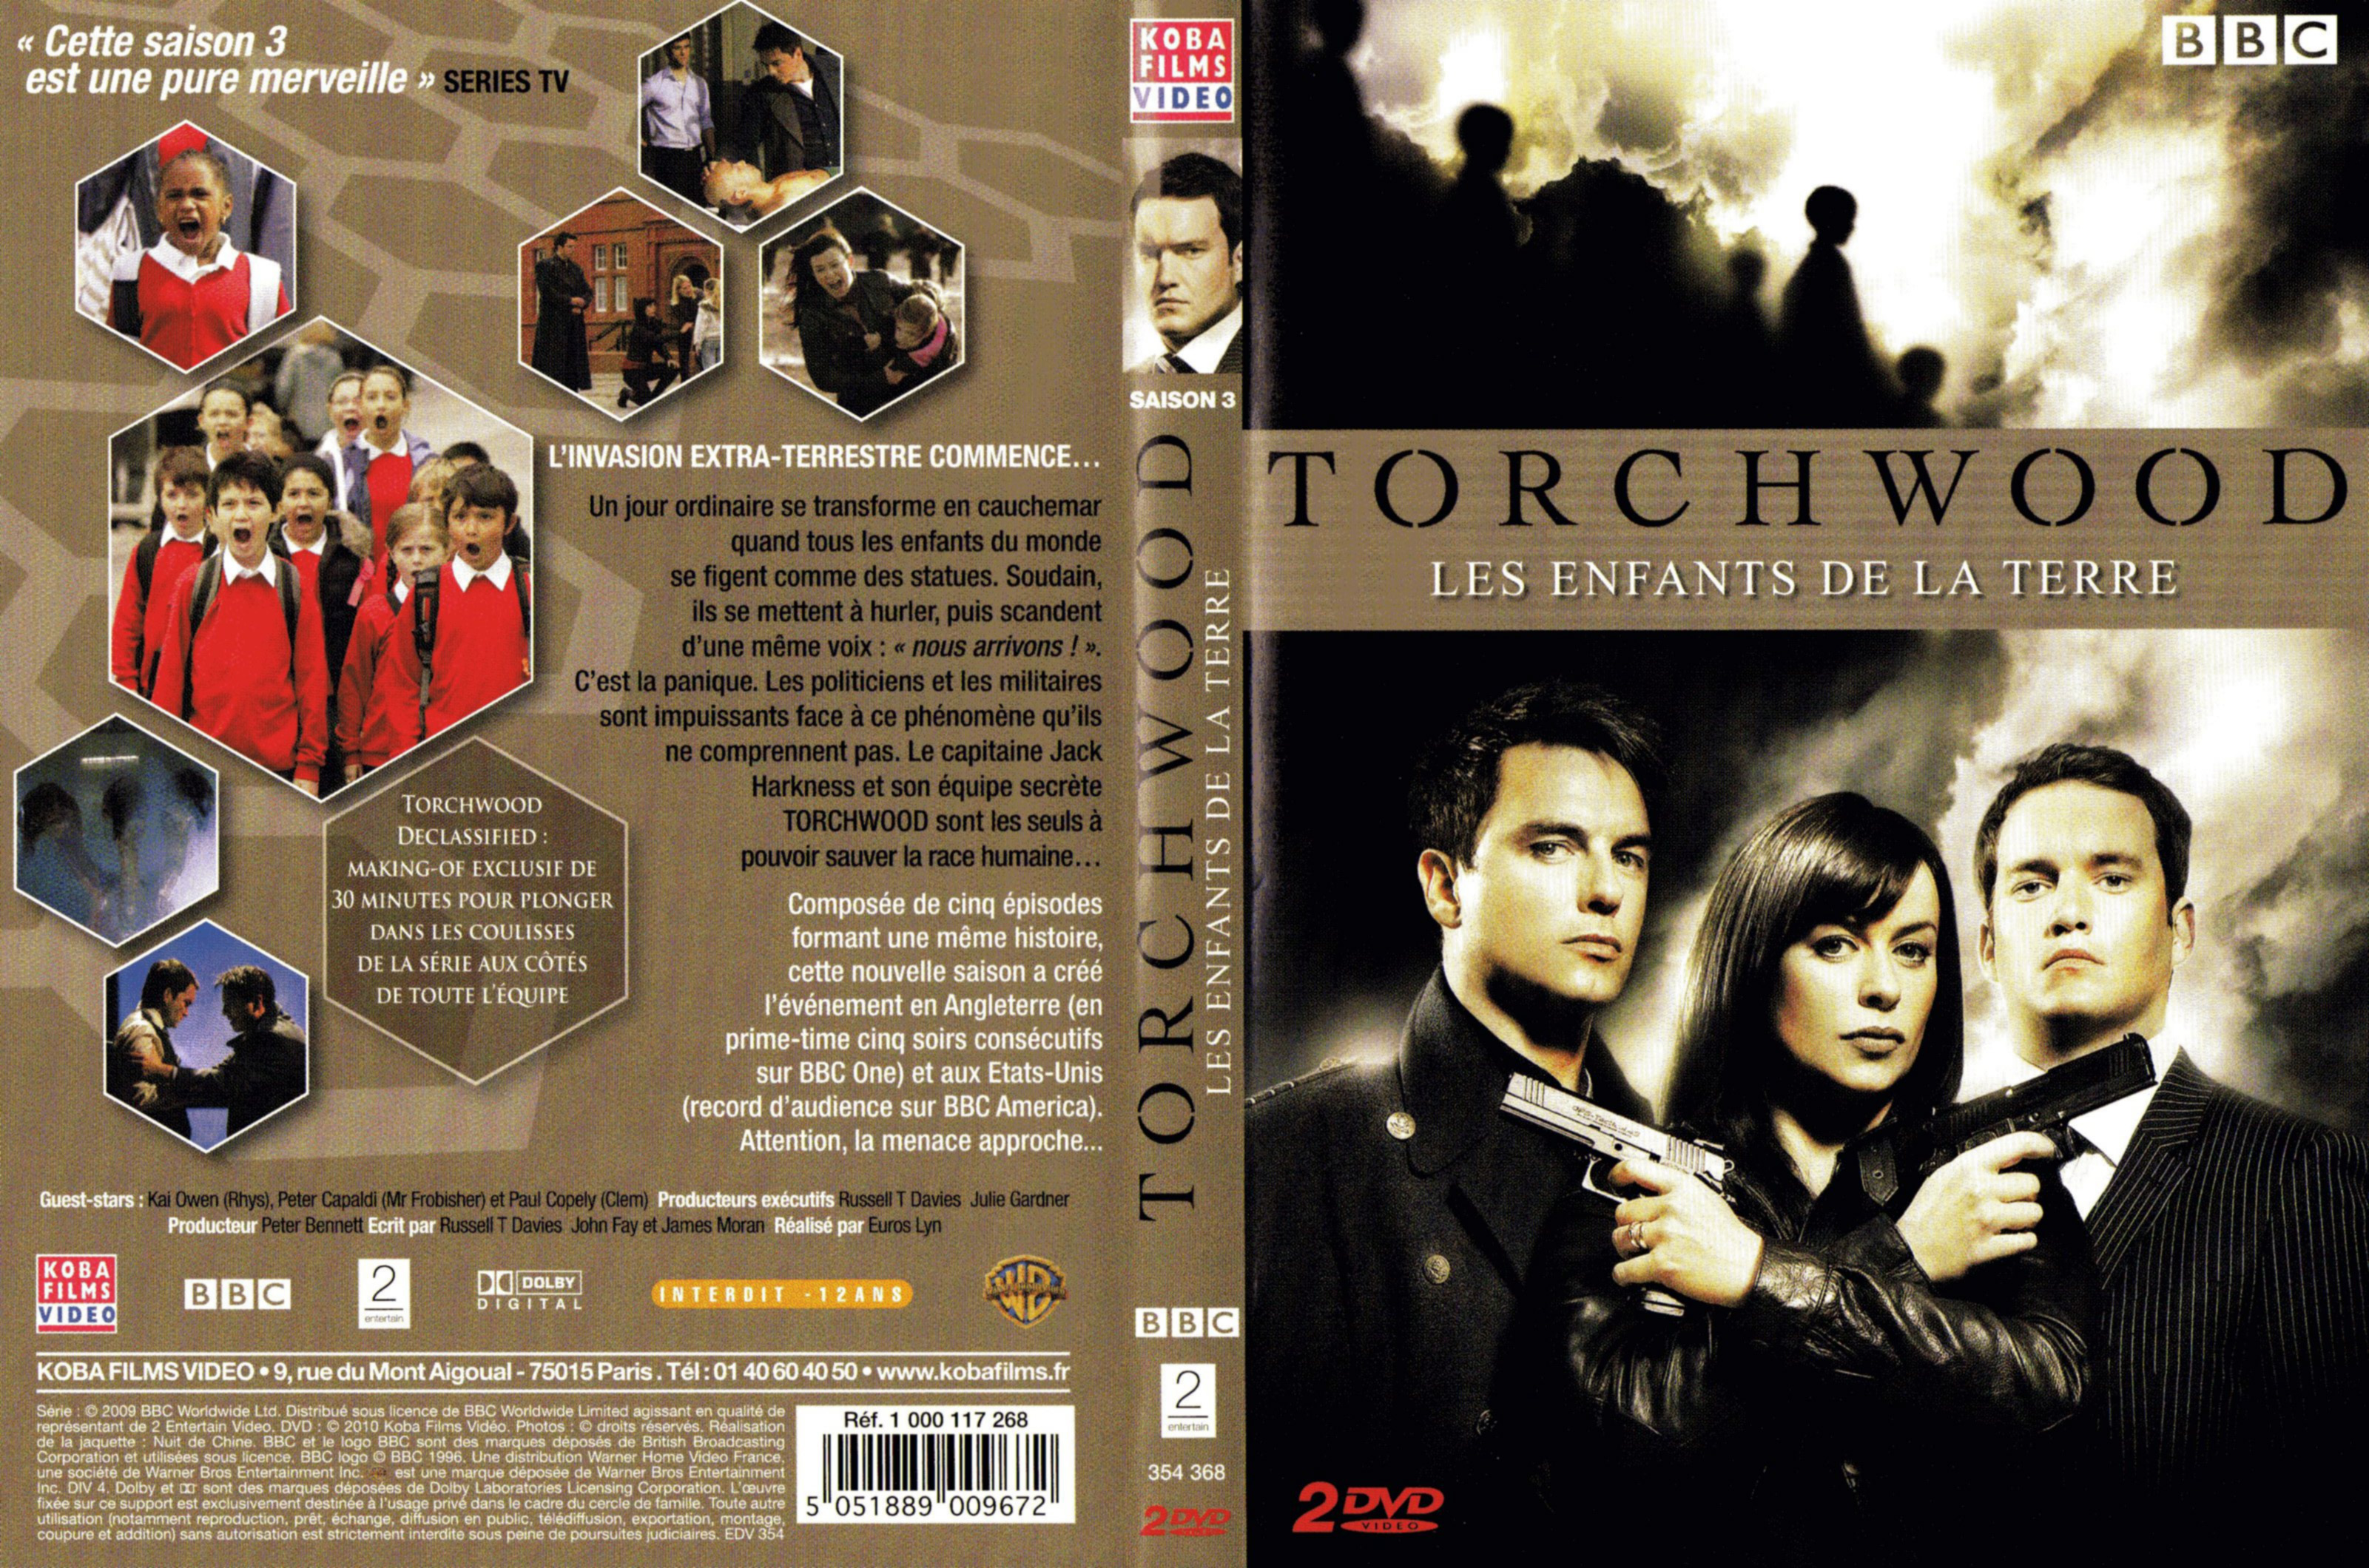 Jaquette DVD Torchwood Saison 3 COFFRET